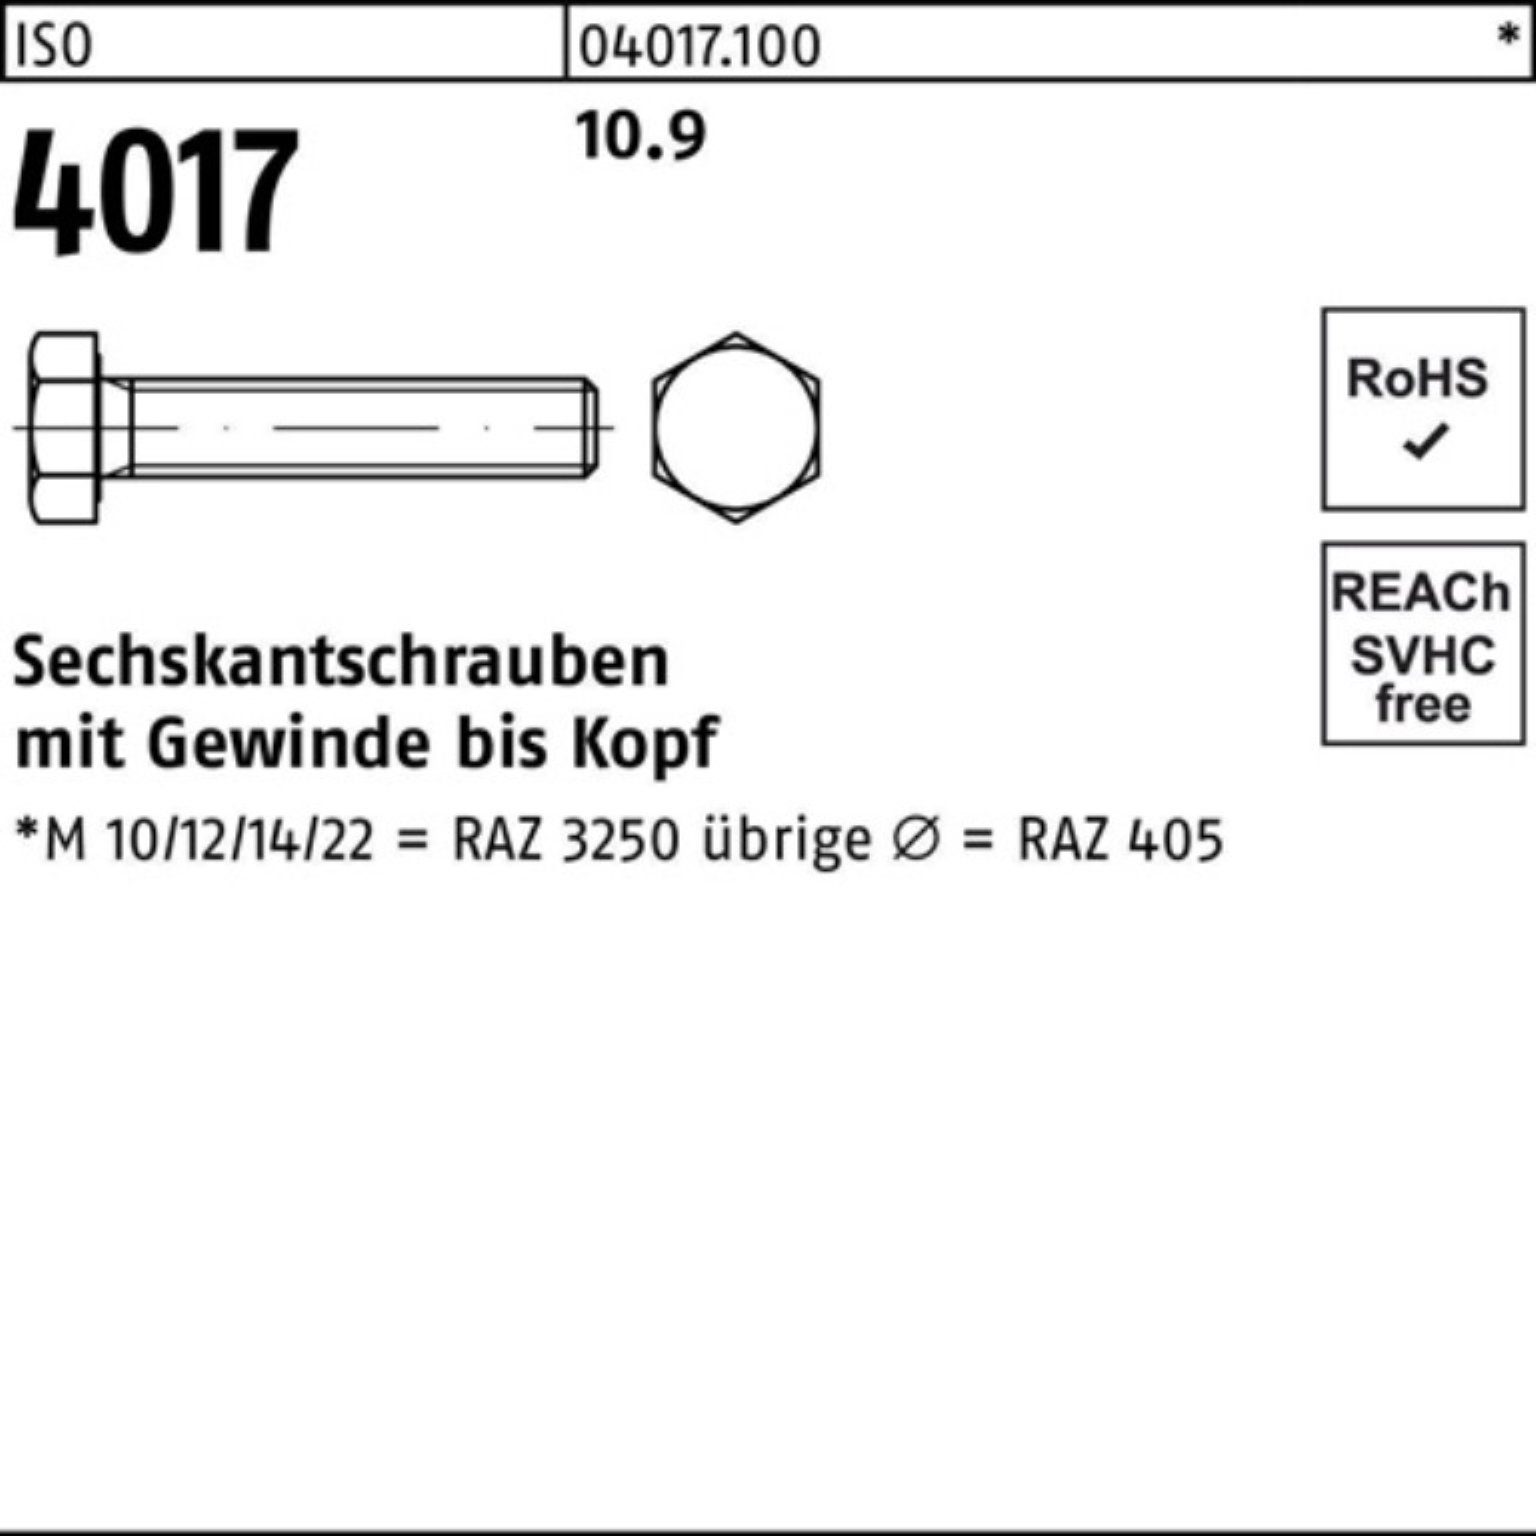 Bufab Sechskantschraube 4017 100er 160 VG 10.9 Sechskantschraube ISO ISO Stück M14x Pack 25 4